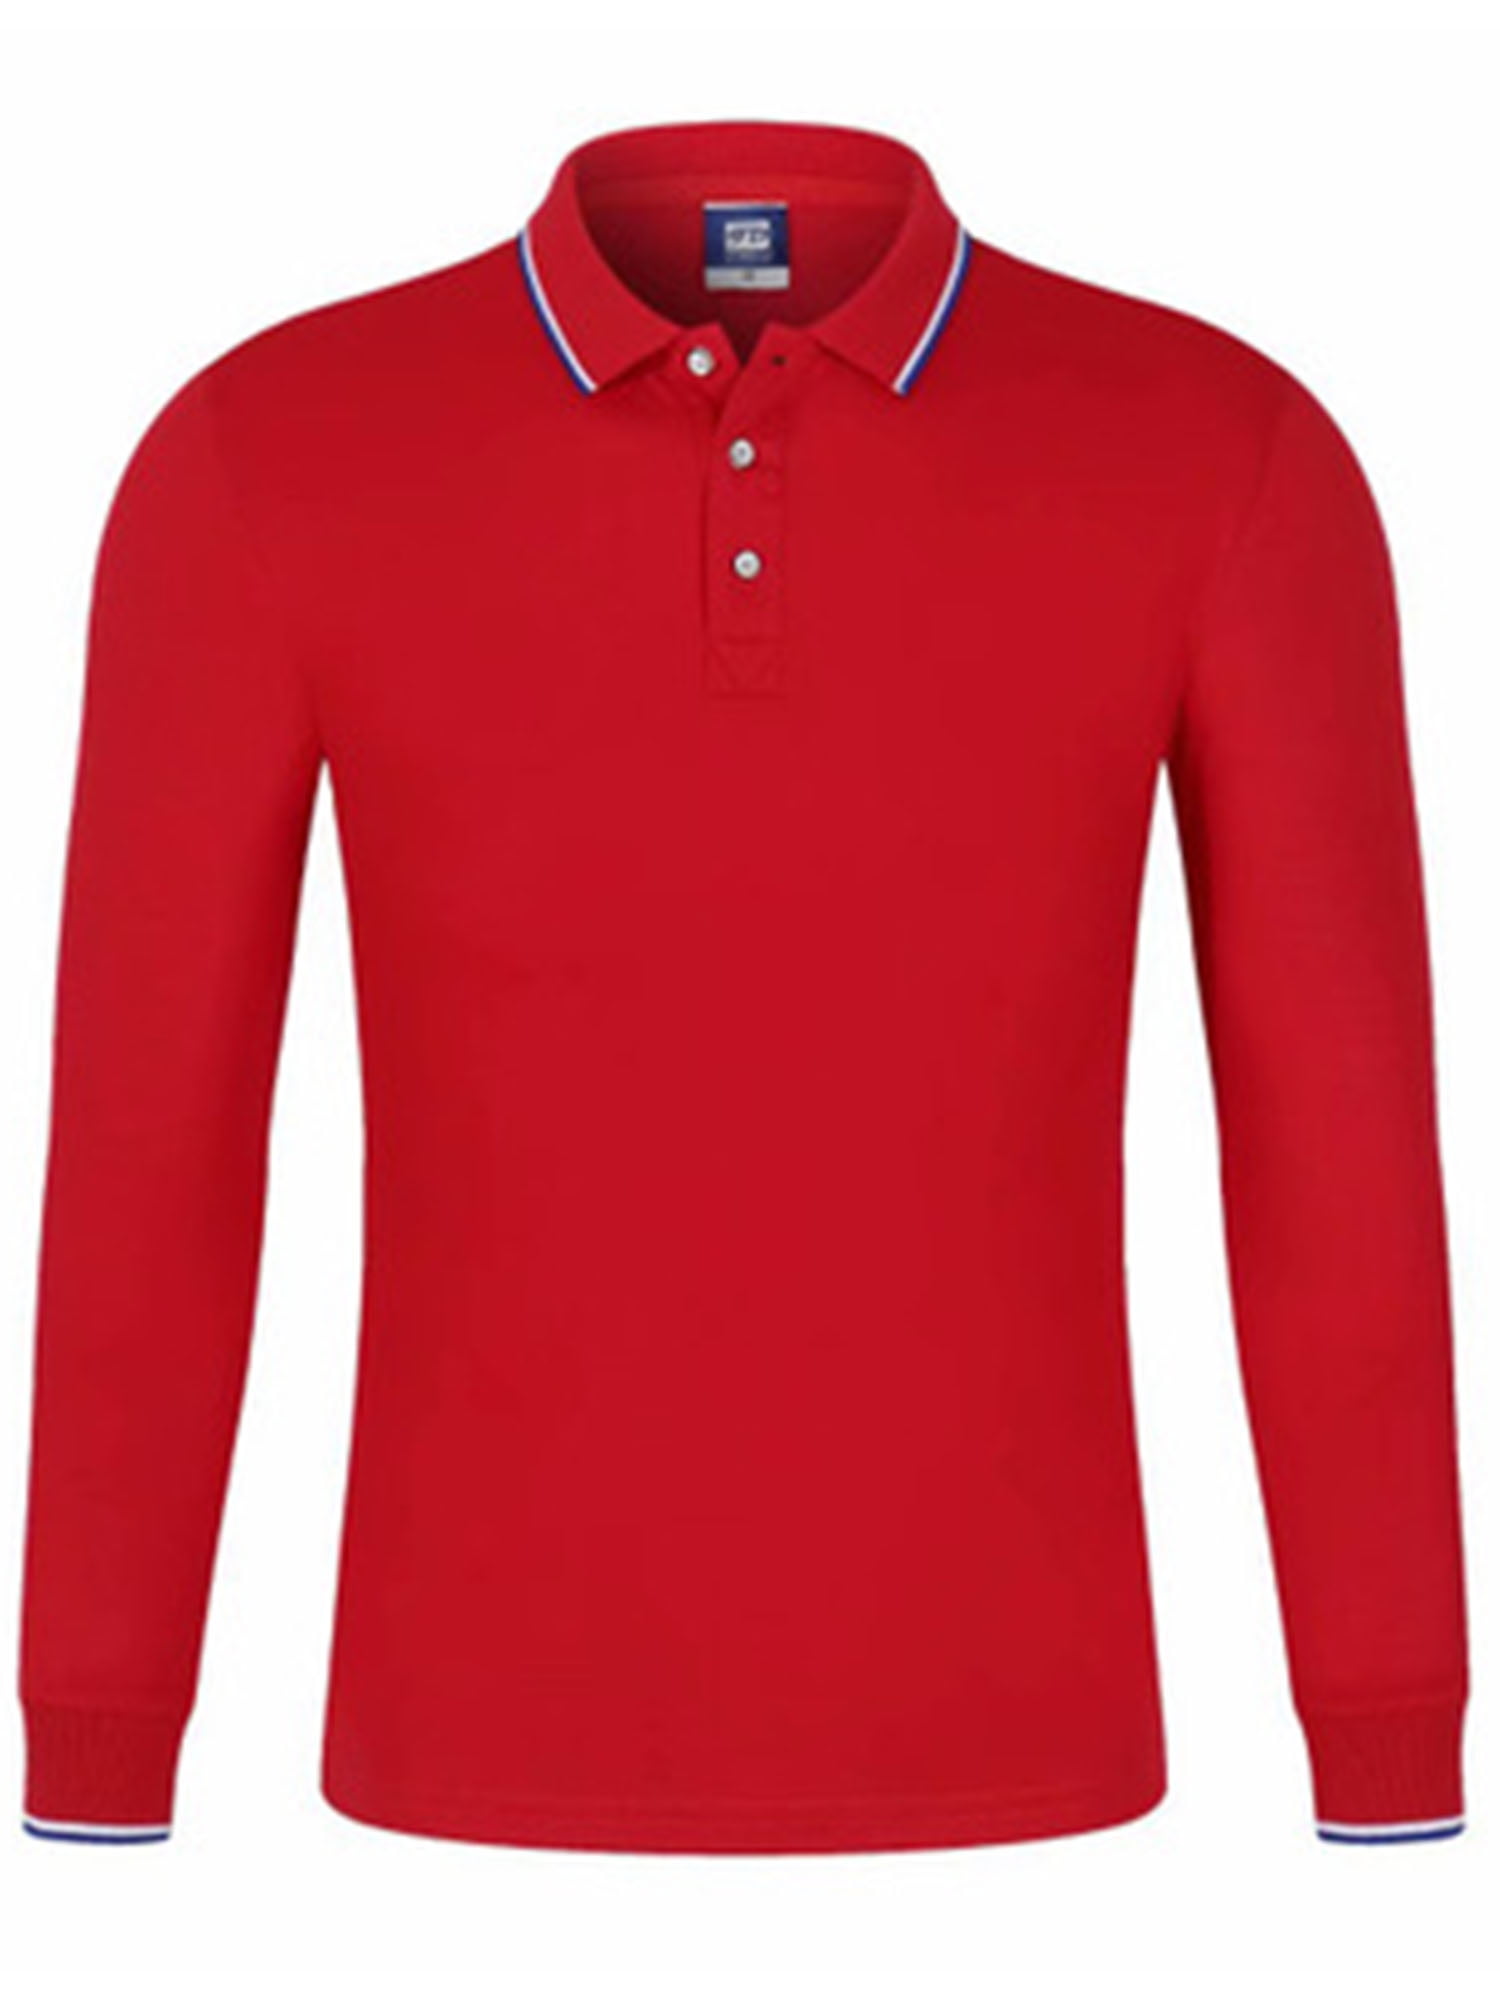 plain red golf t shirt